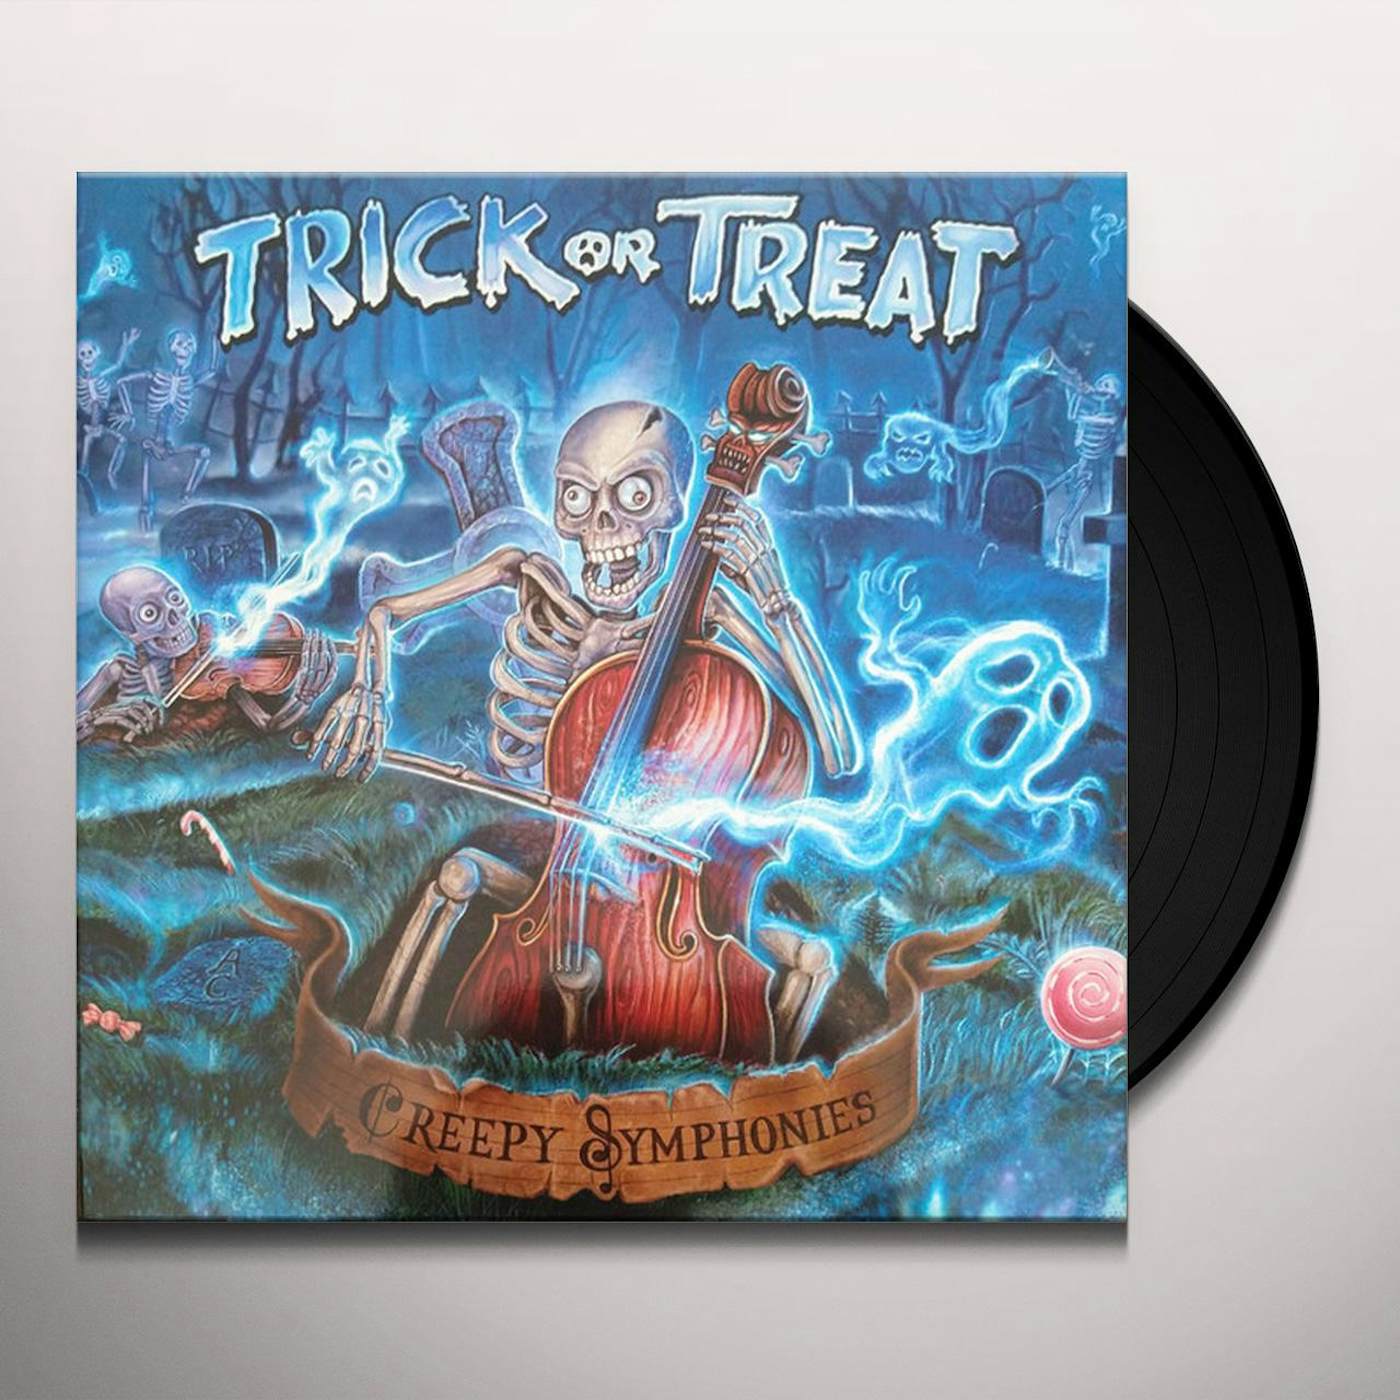 Trick or Treat Creepy Symphonies Vinyl Record